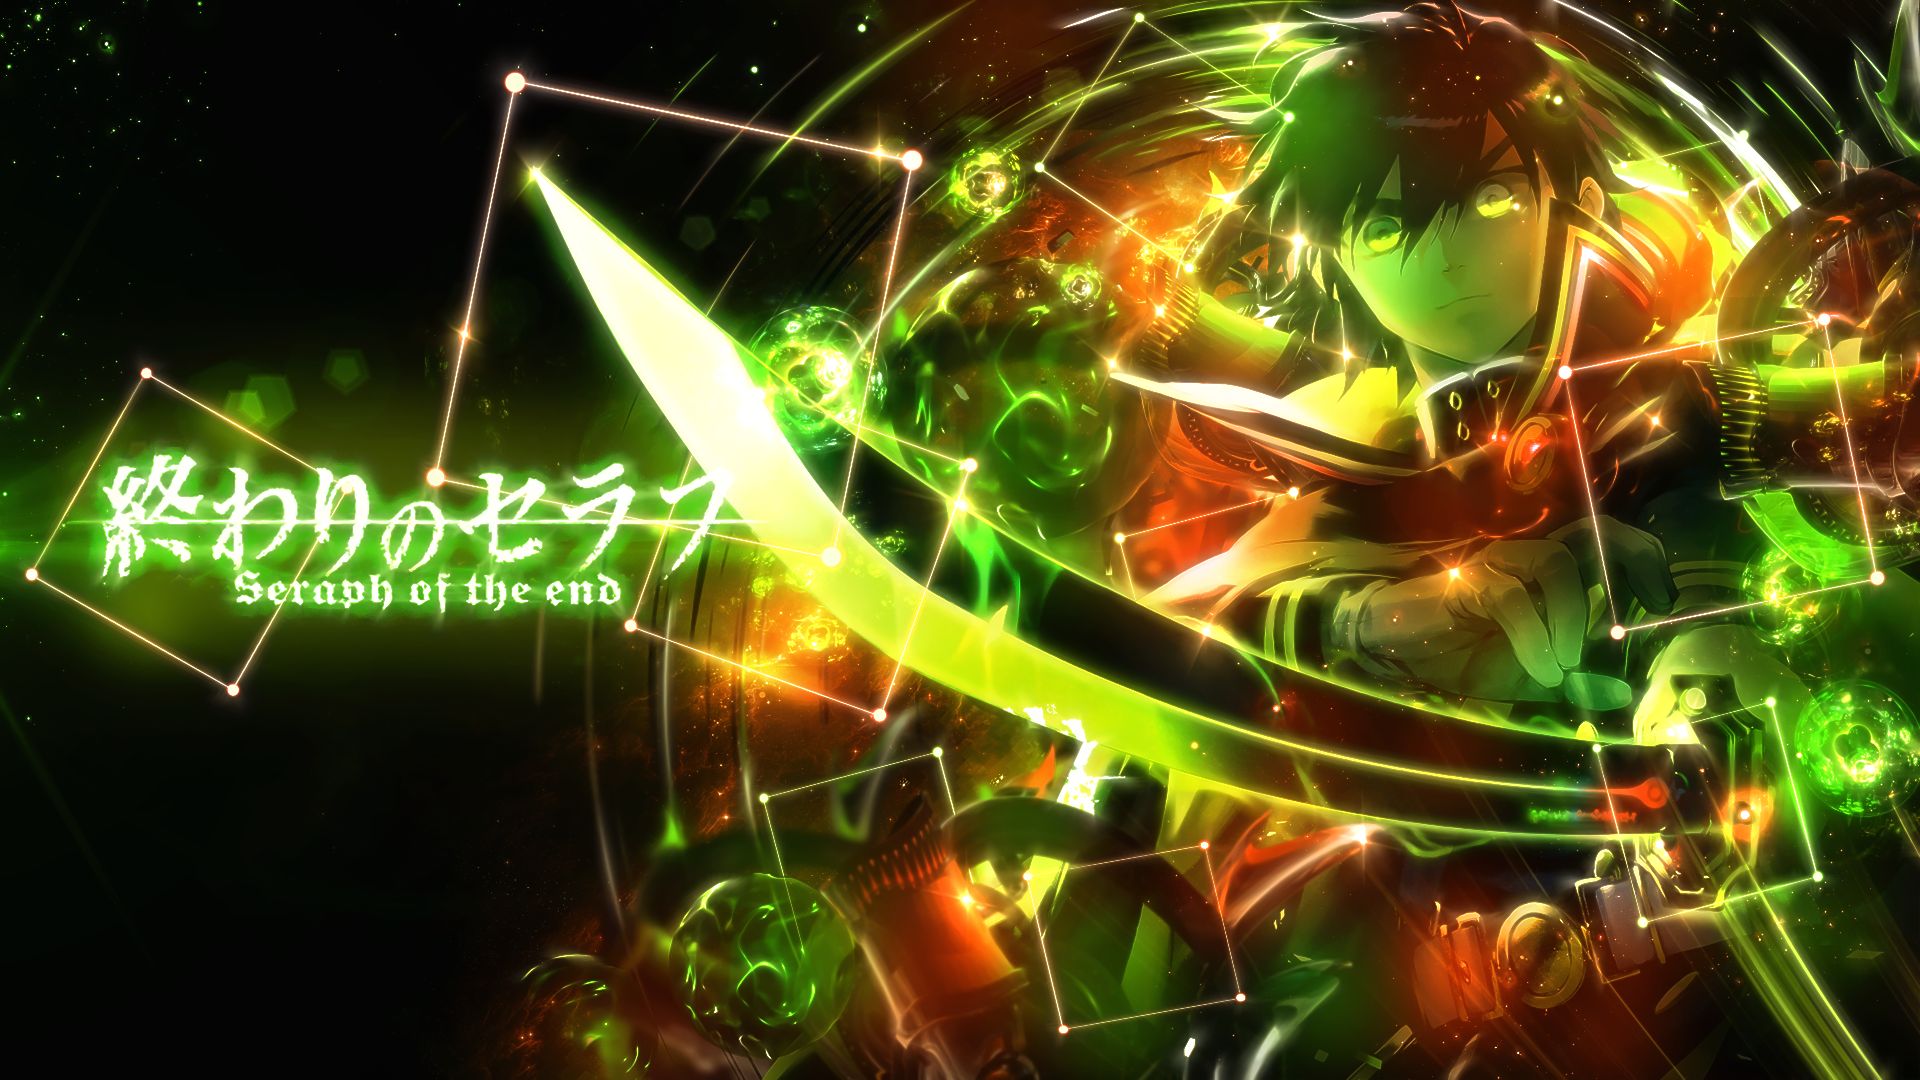 Descarga gratuita de fondo de pantalla para móvil de Animado, Yuichiro Hyakuya, Serafín Del Fin.